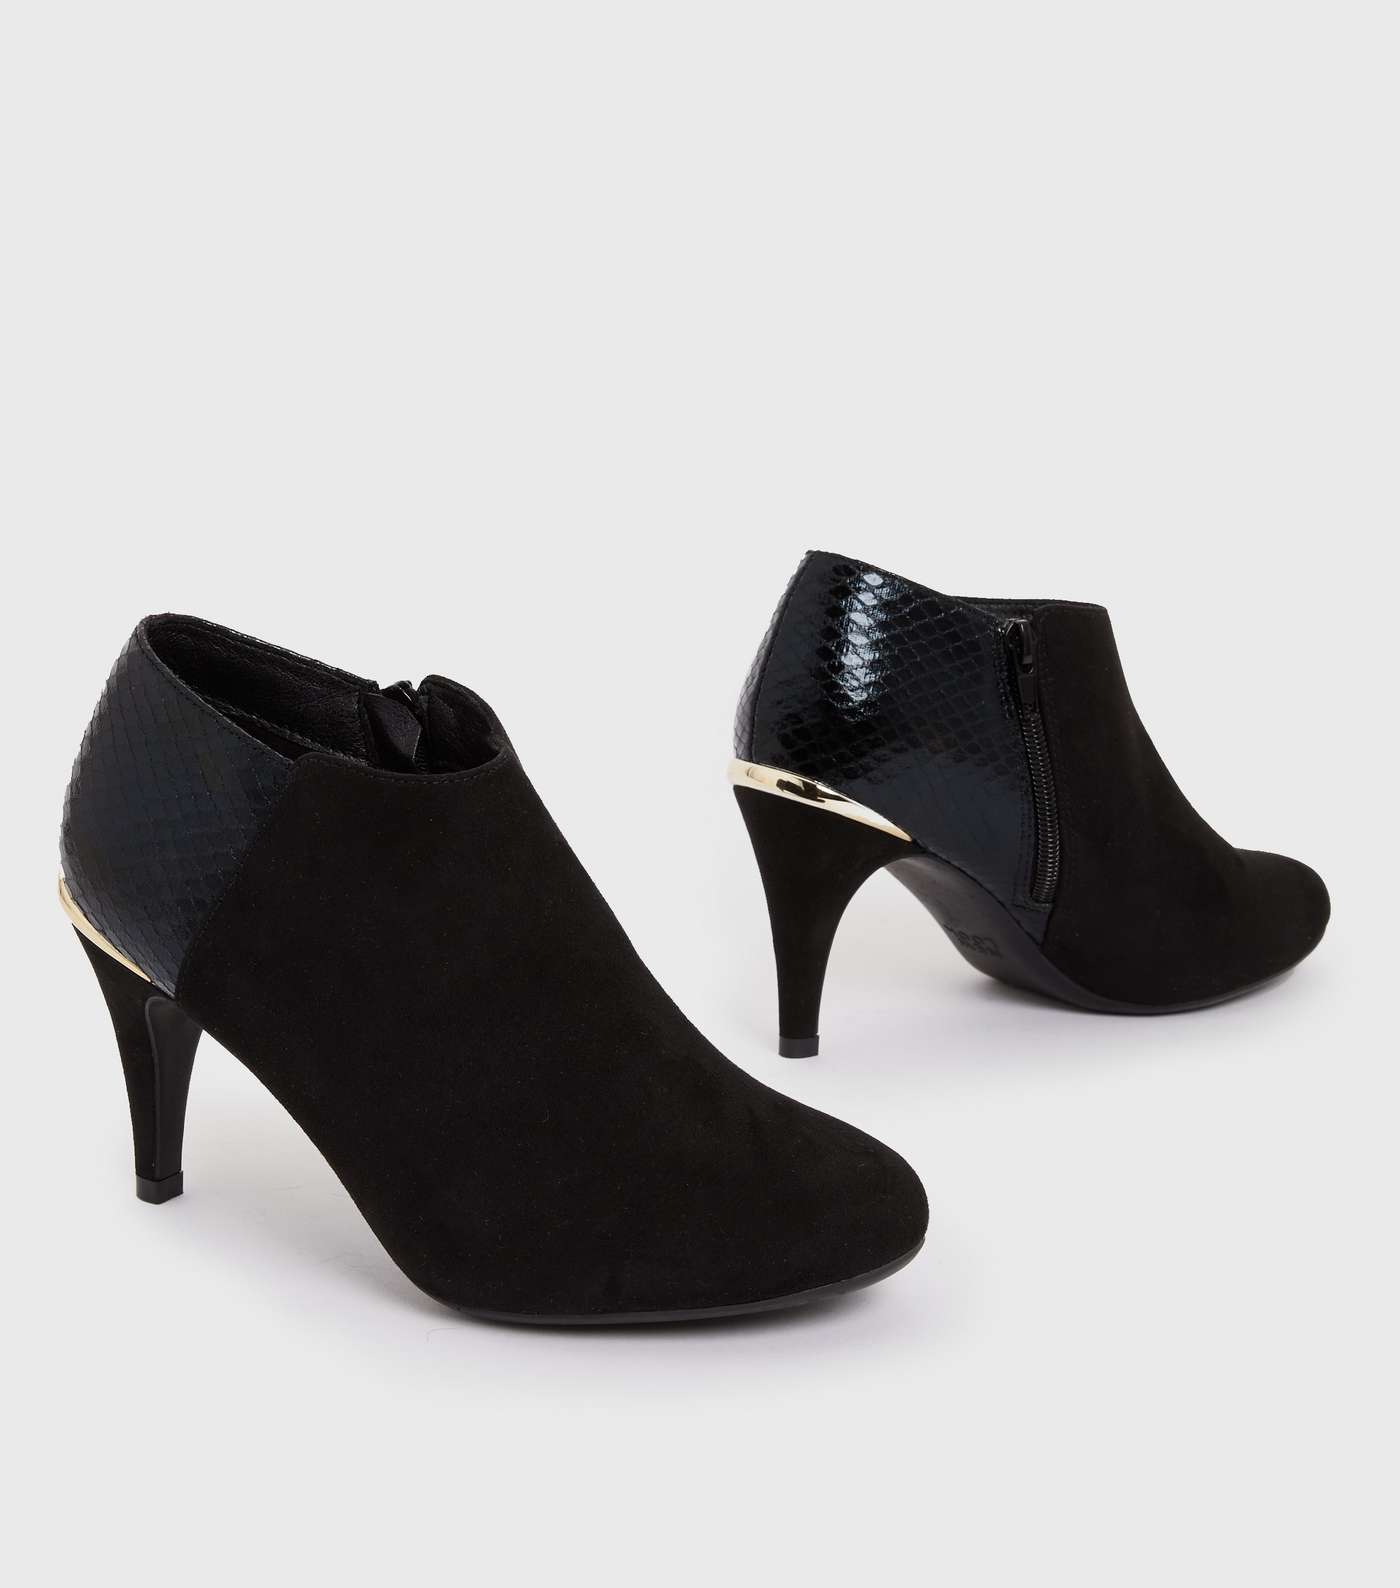 Black Suedette and Faux Croc Metal Trim Stiletto Heel Shoes Boots Image 3